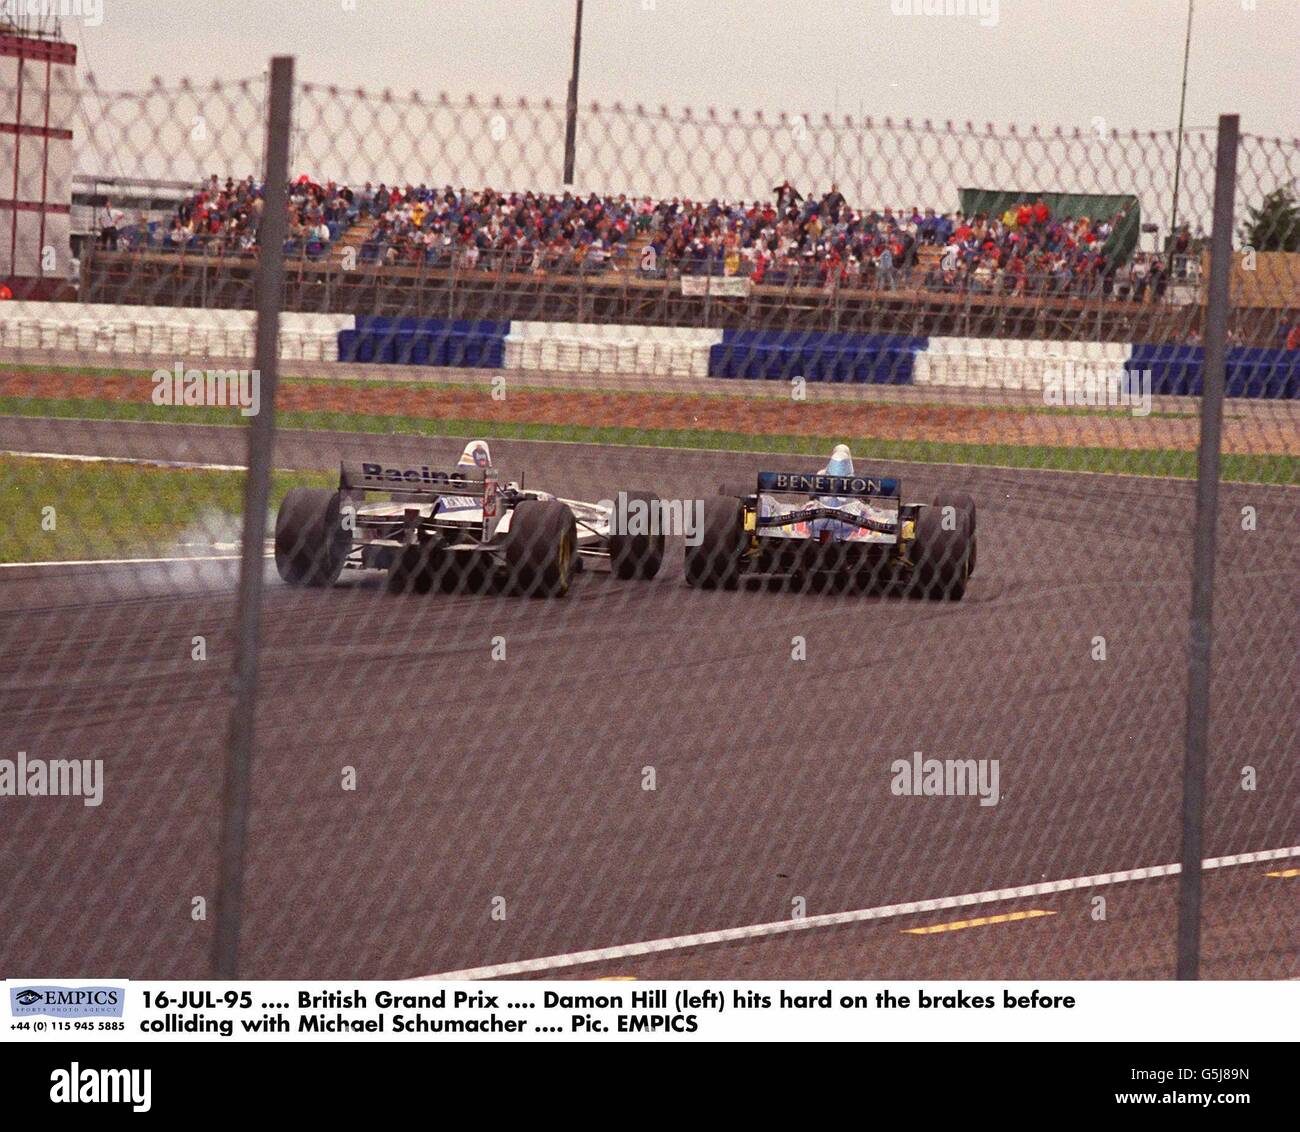 16-JUL-95. Großer Preis Von Großbritannien. Damon Hill (links) trifft hart auf die Bremsen, bevor er mit Michael Schumacher zusammenstößt Stockfoto